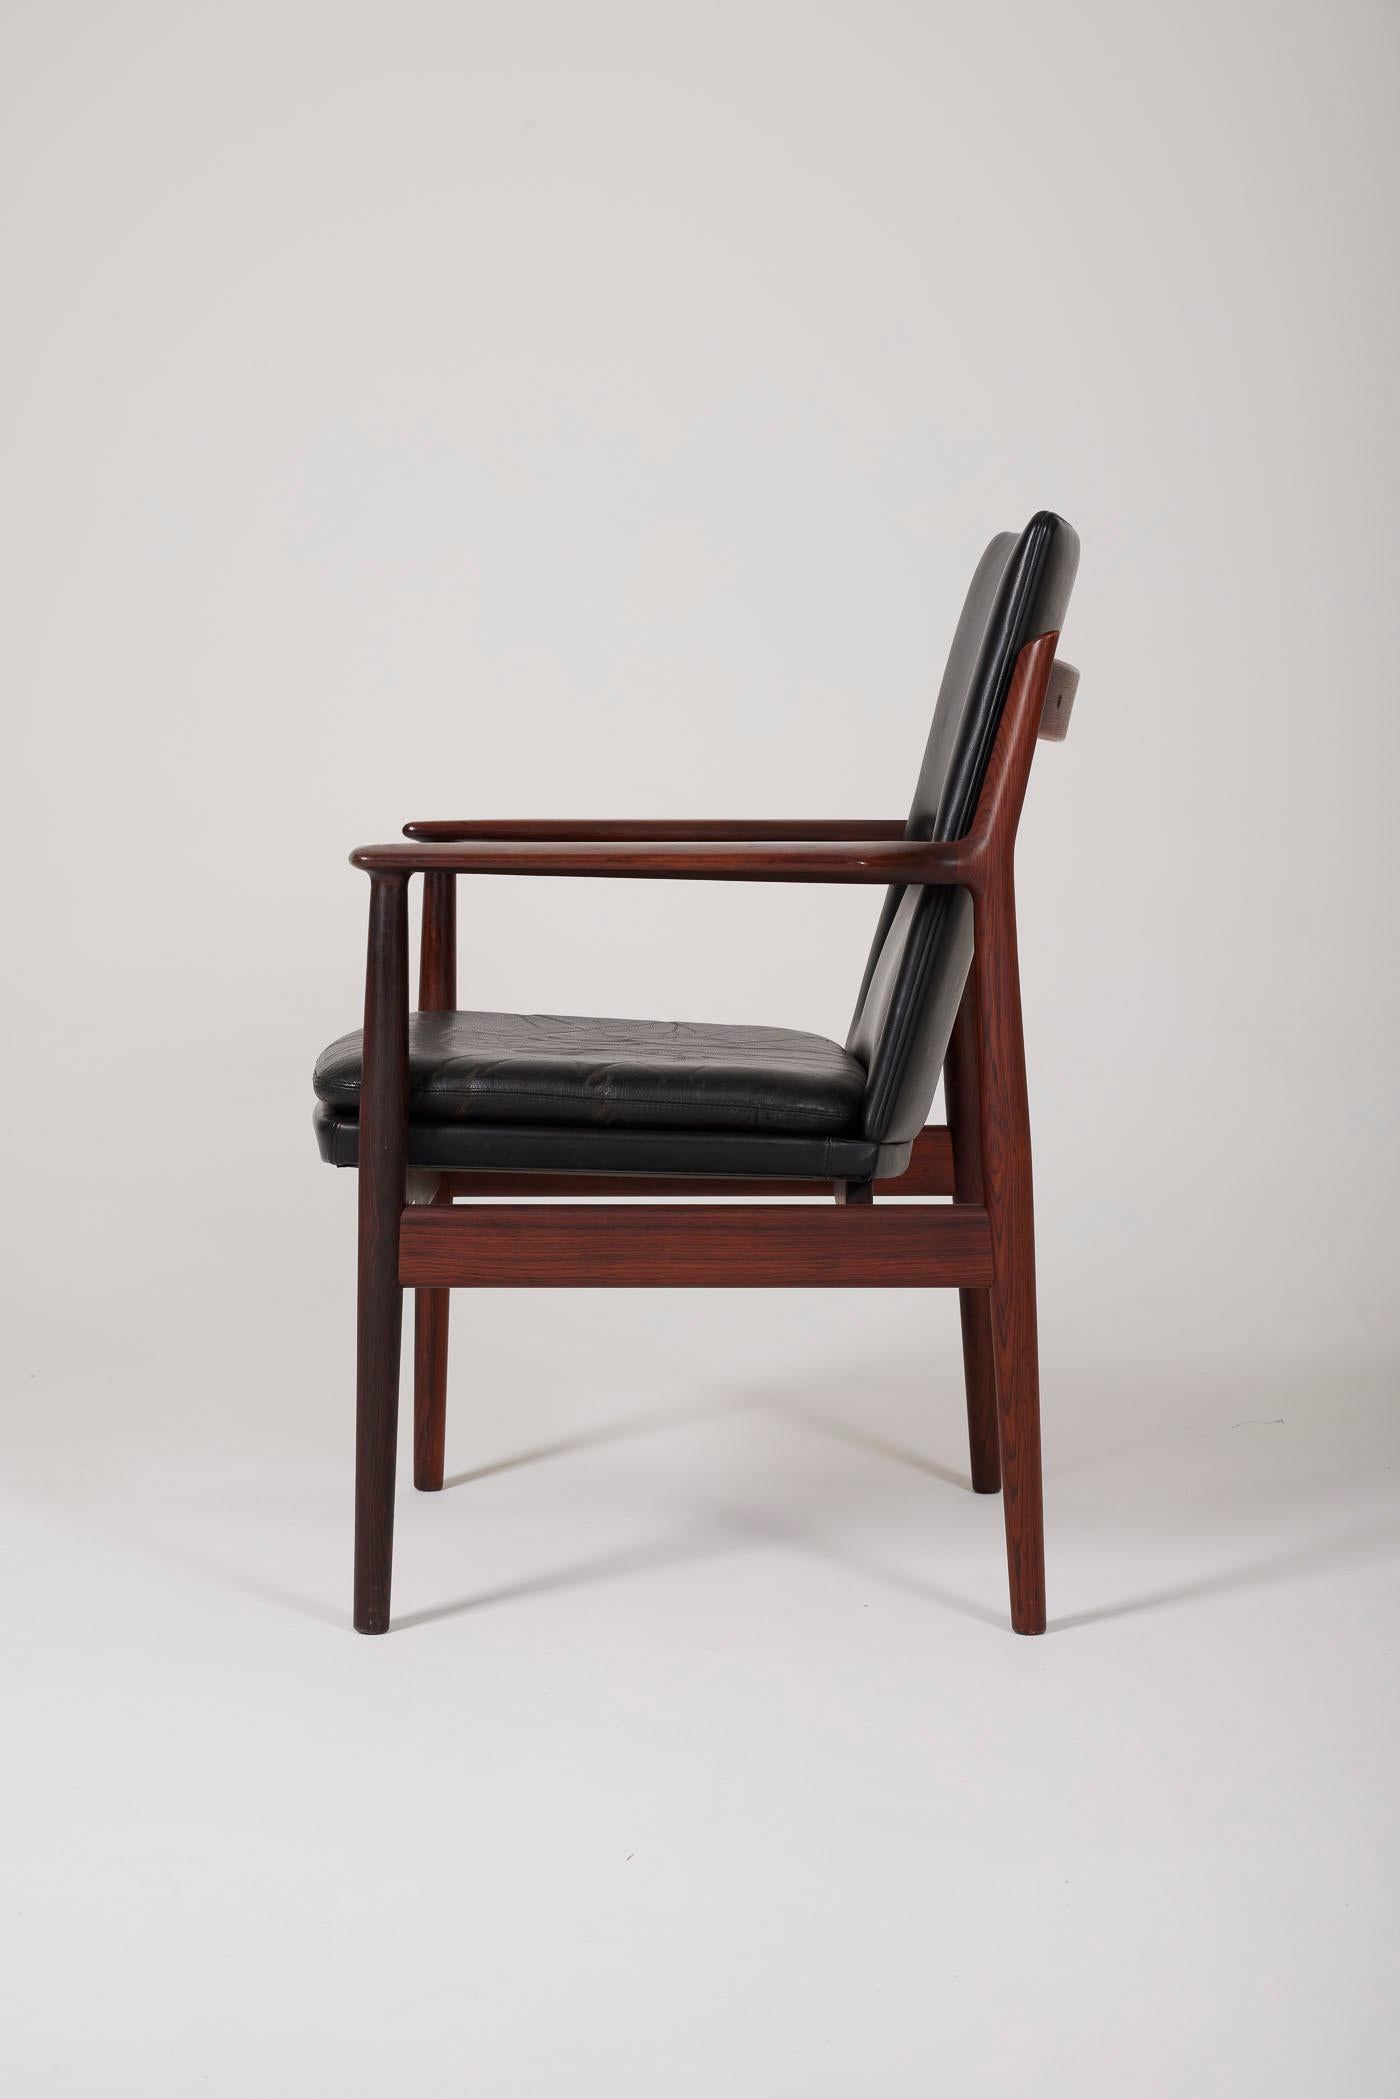 Fauteuil vintage danois en bois de rose du designer Arne Vodder (1926-2009) pour Sibast Furniture, années 1960. Très bon état général.
DV81